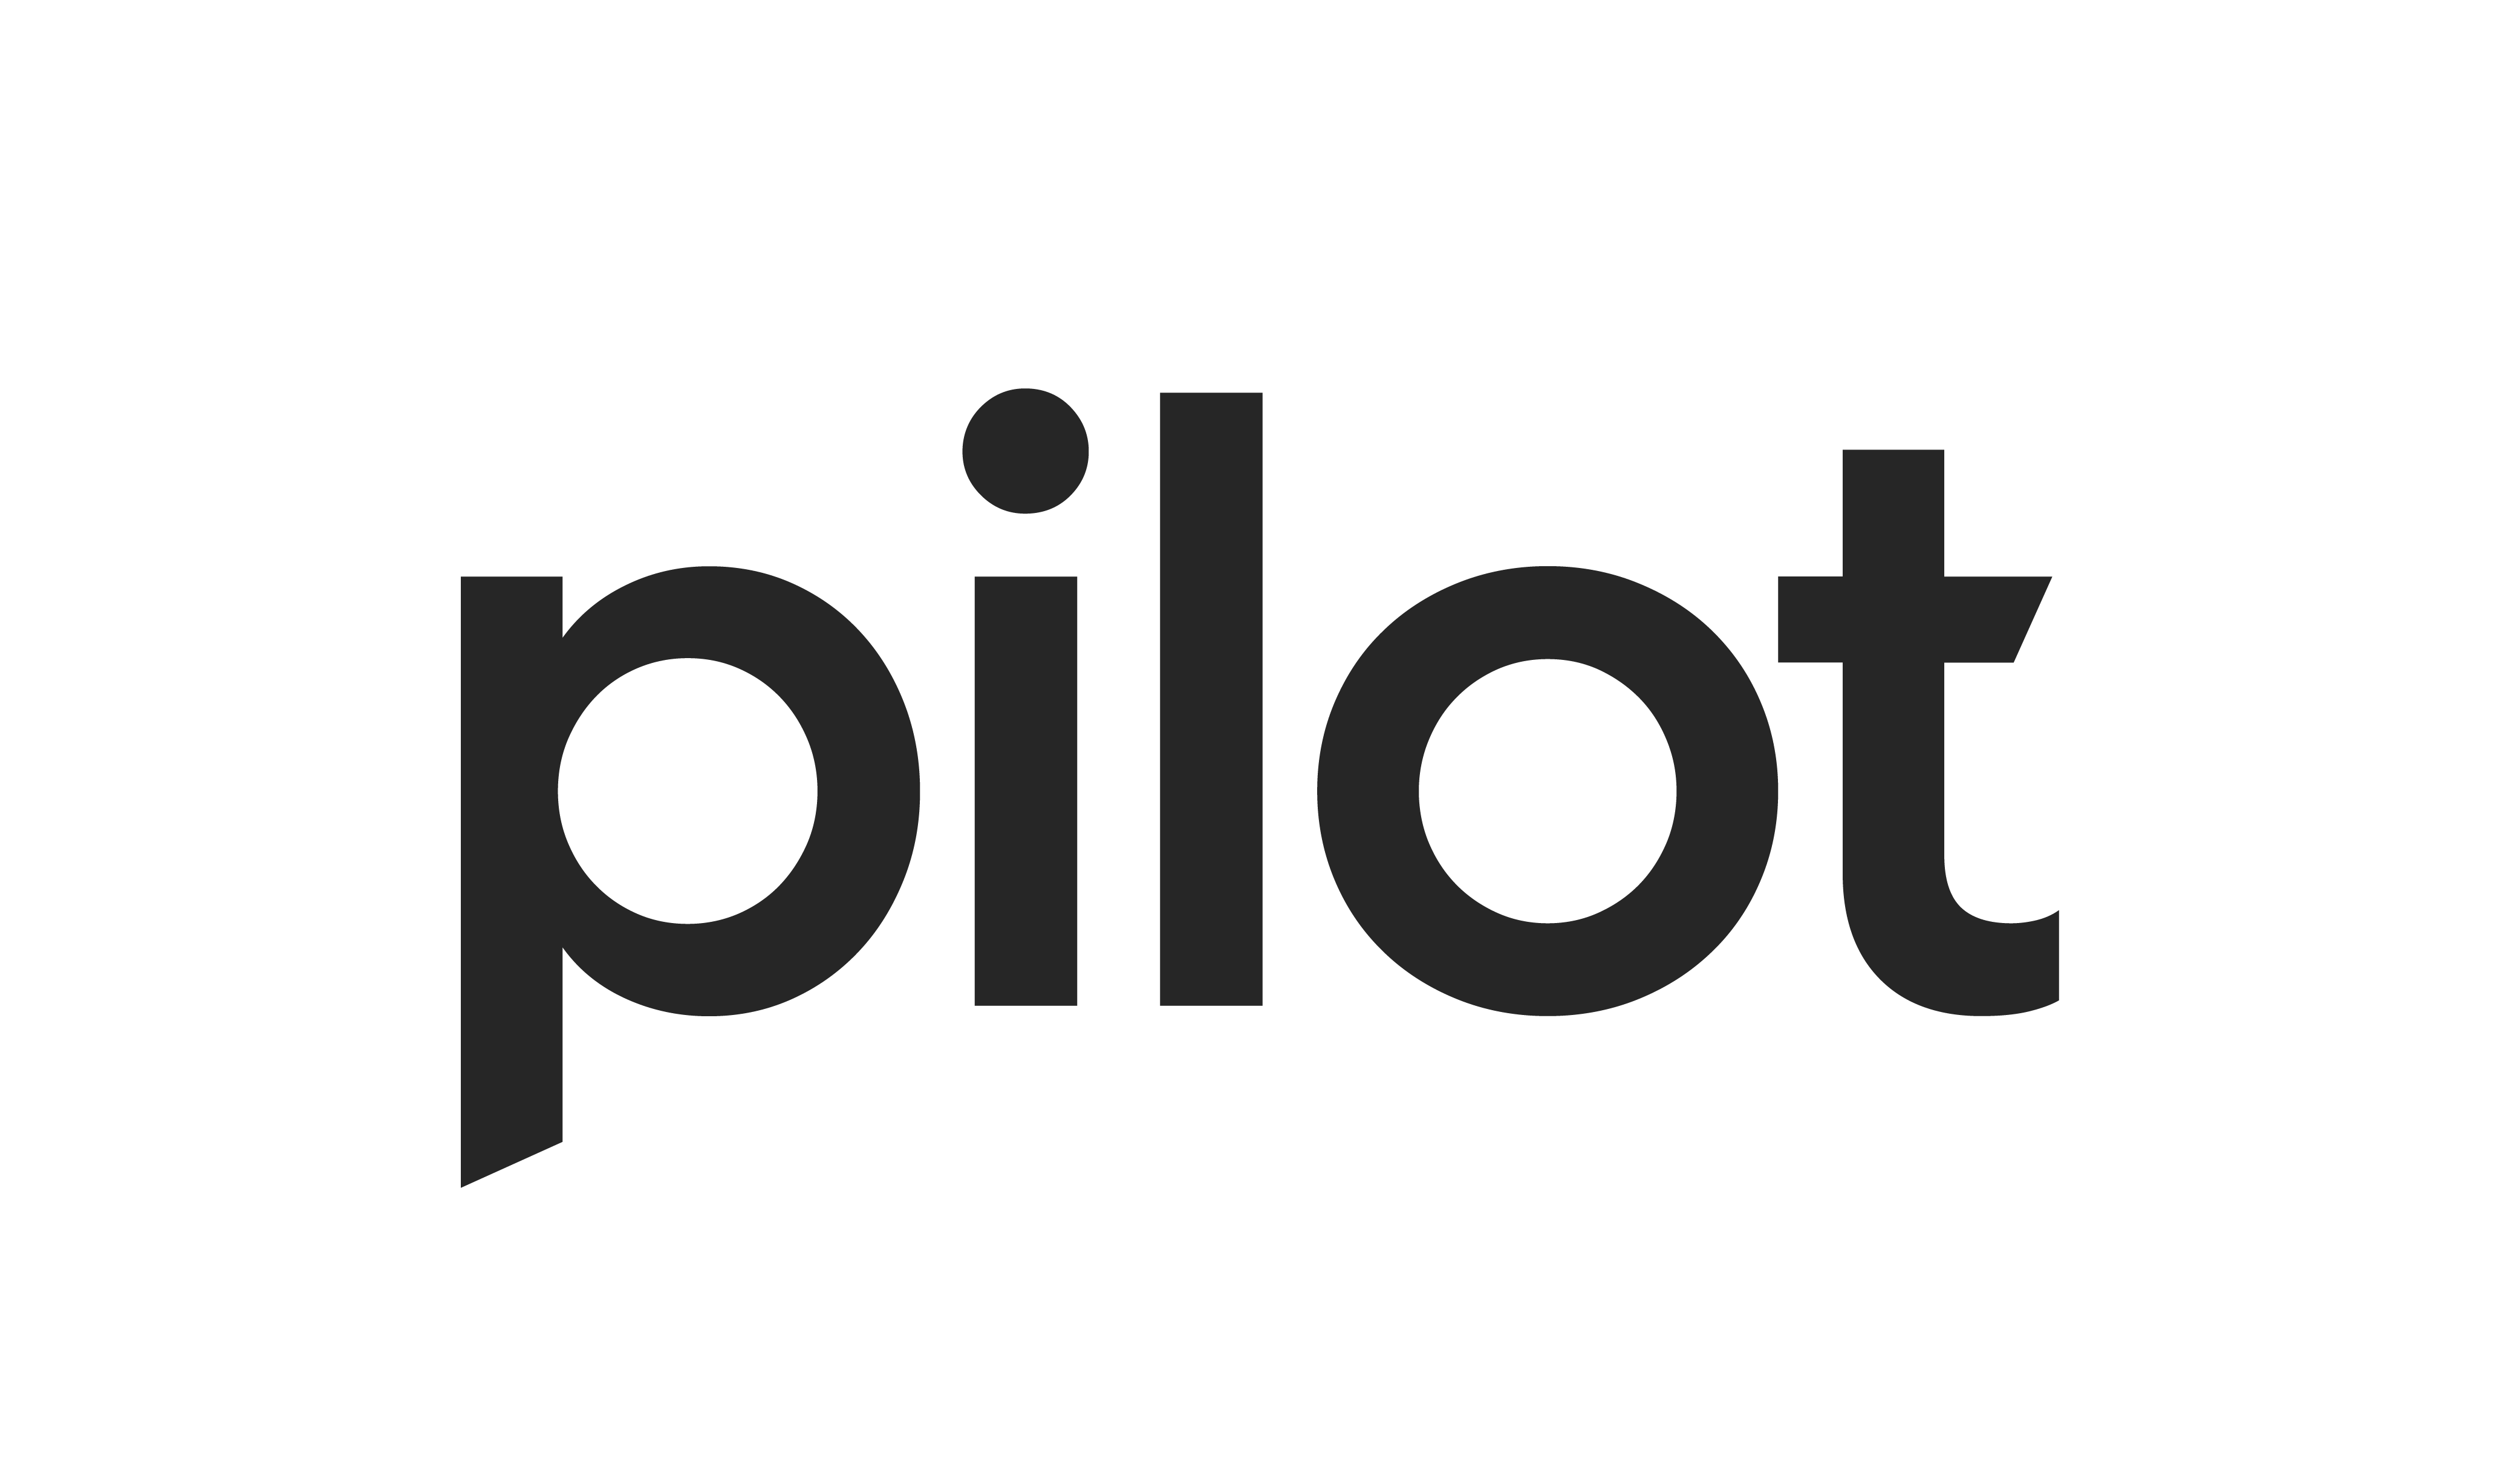 pilot logo